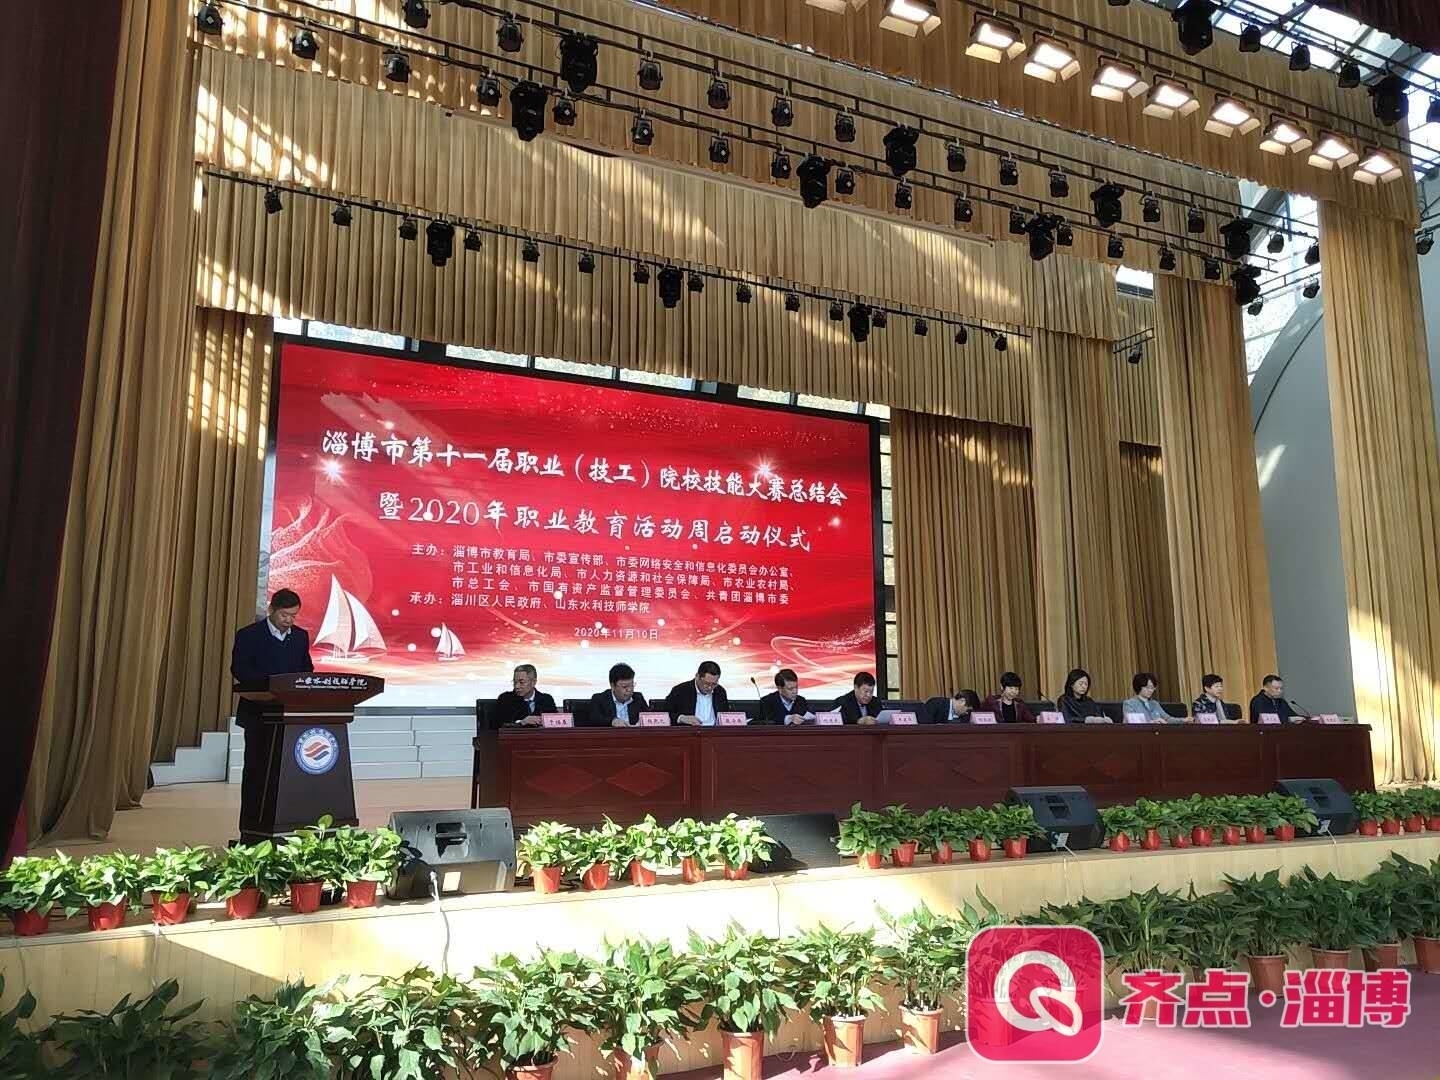 快讯 | 2020年淄博市职业教育活动周正式启动